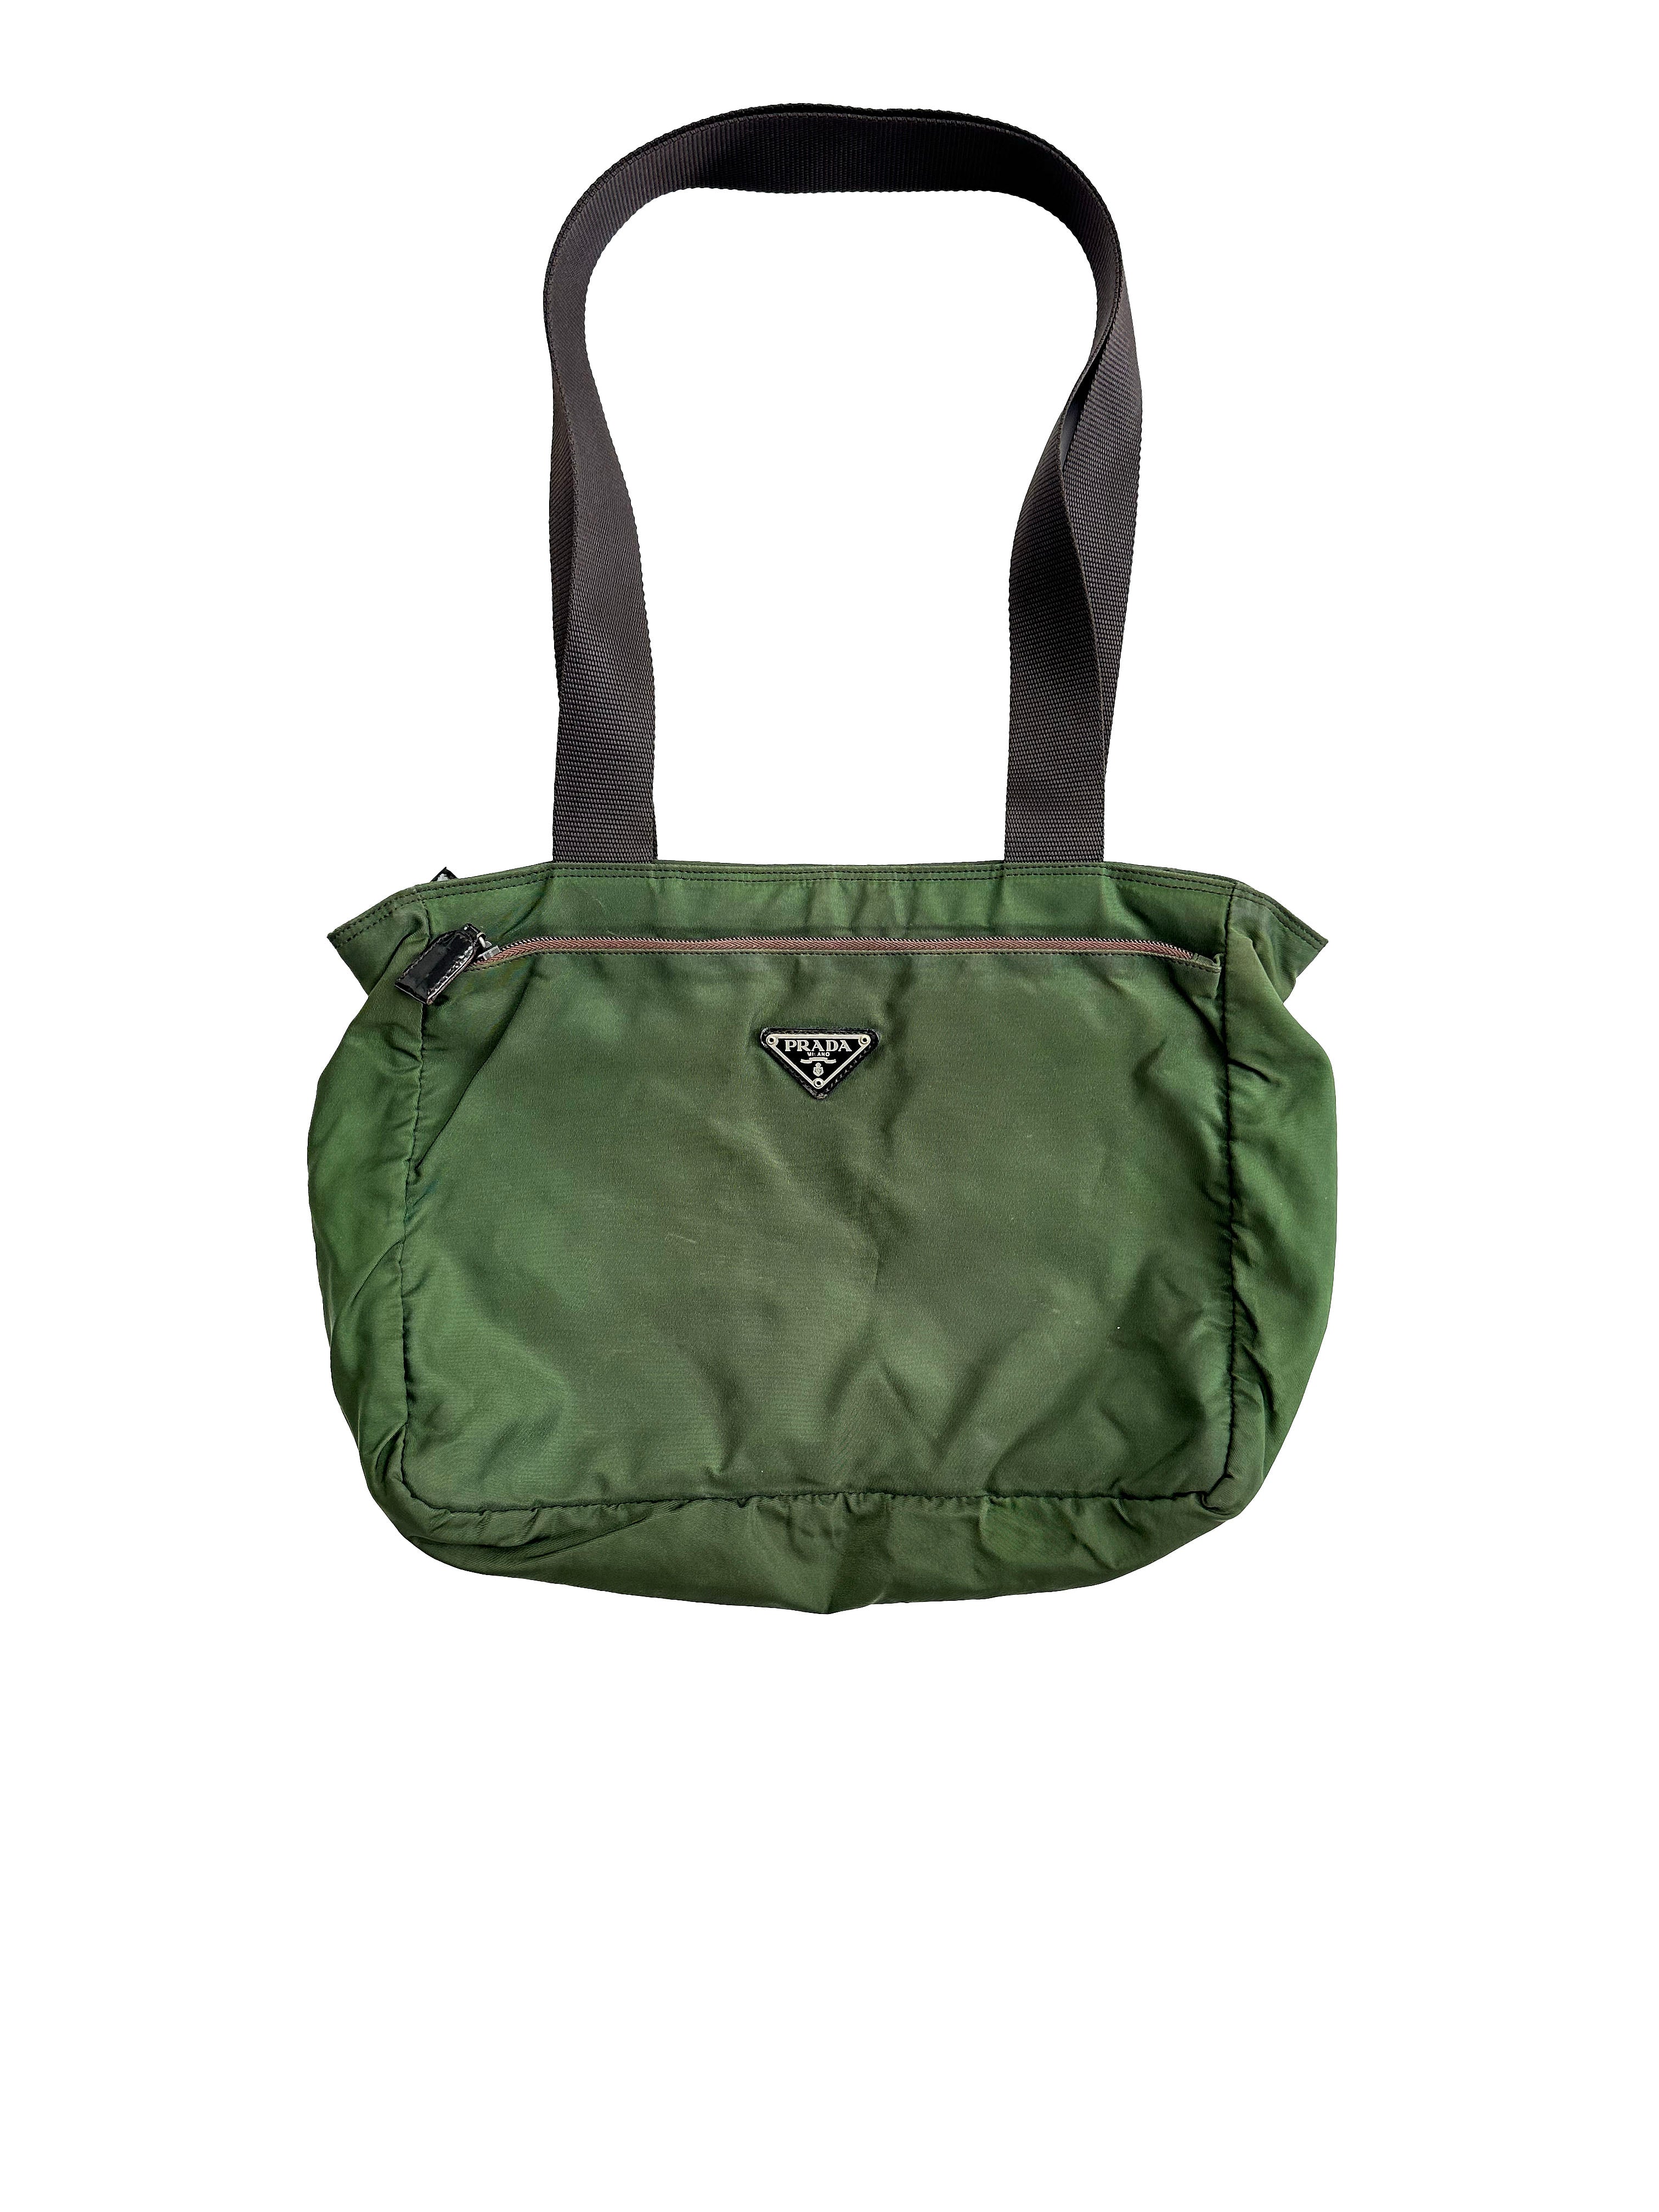 Prada Milano Green Tote Bag 00's